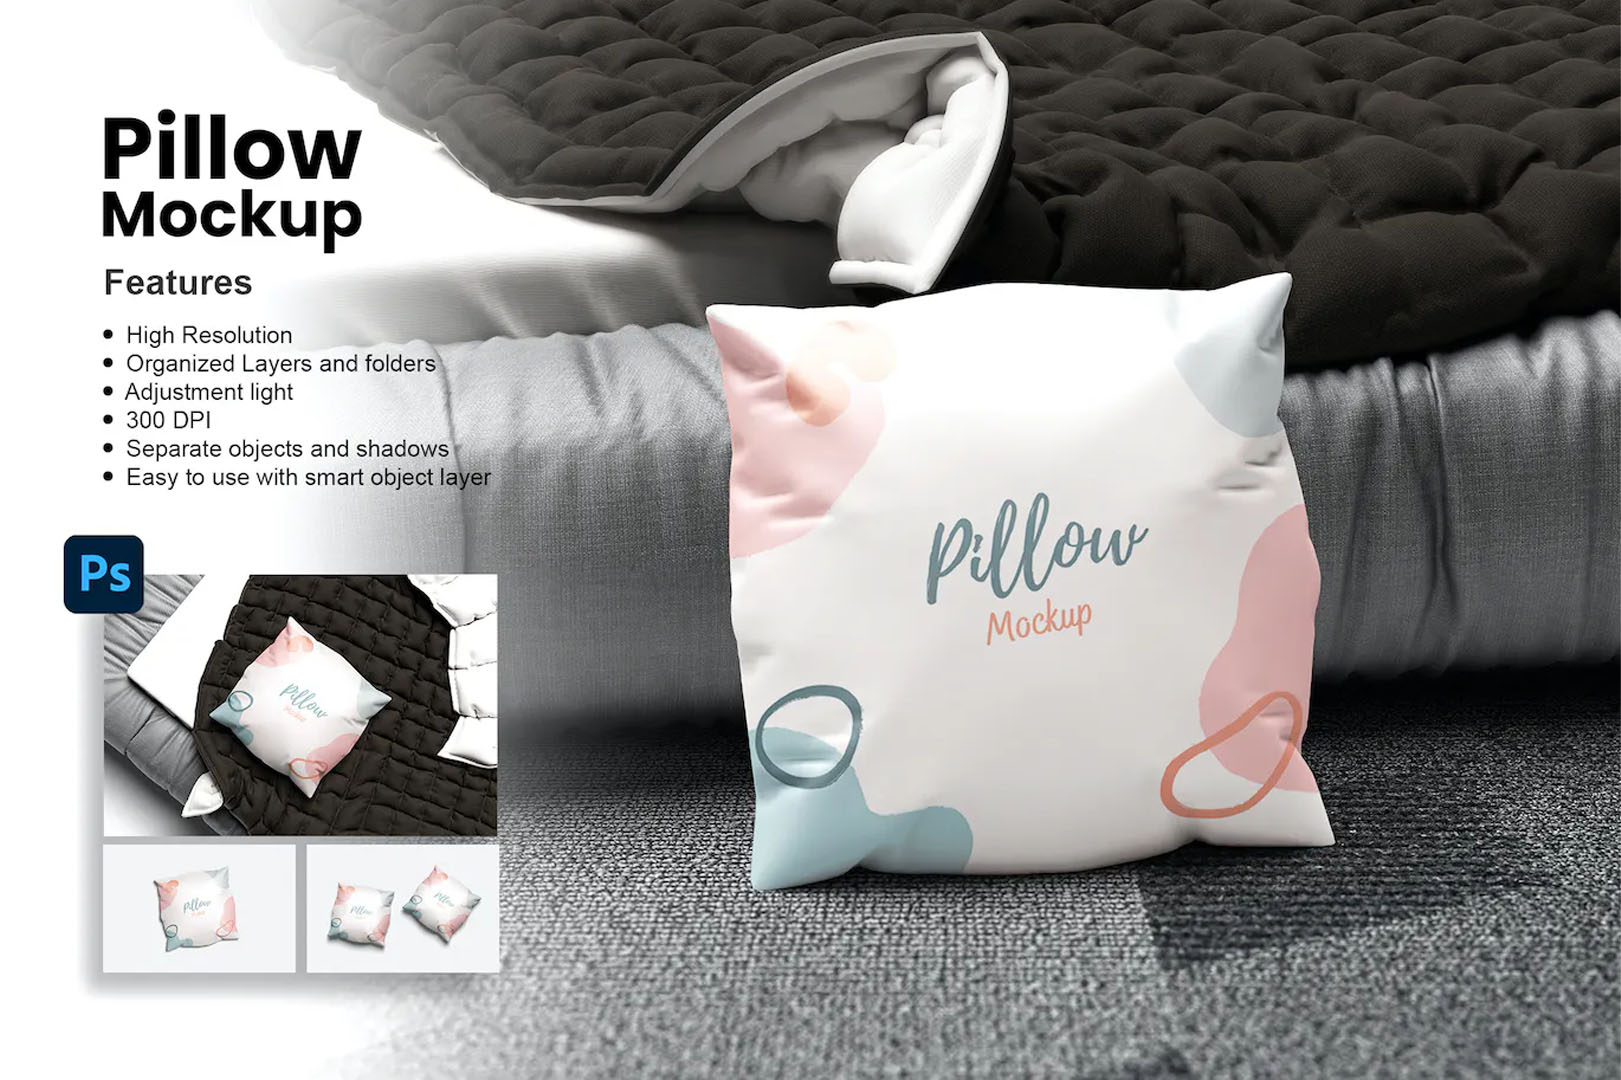 Pillow Mockup PSD Template